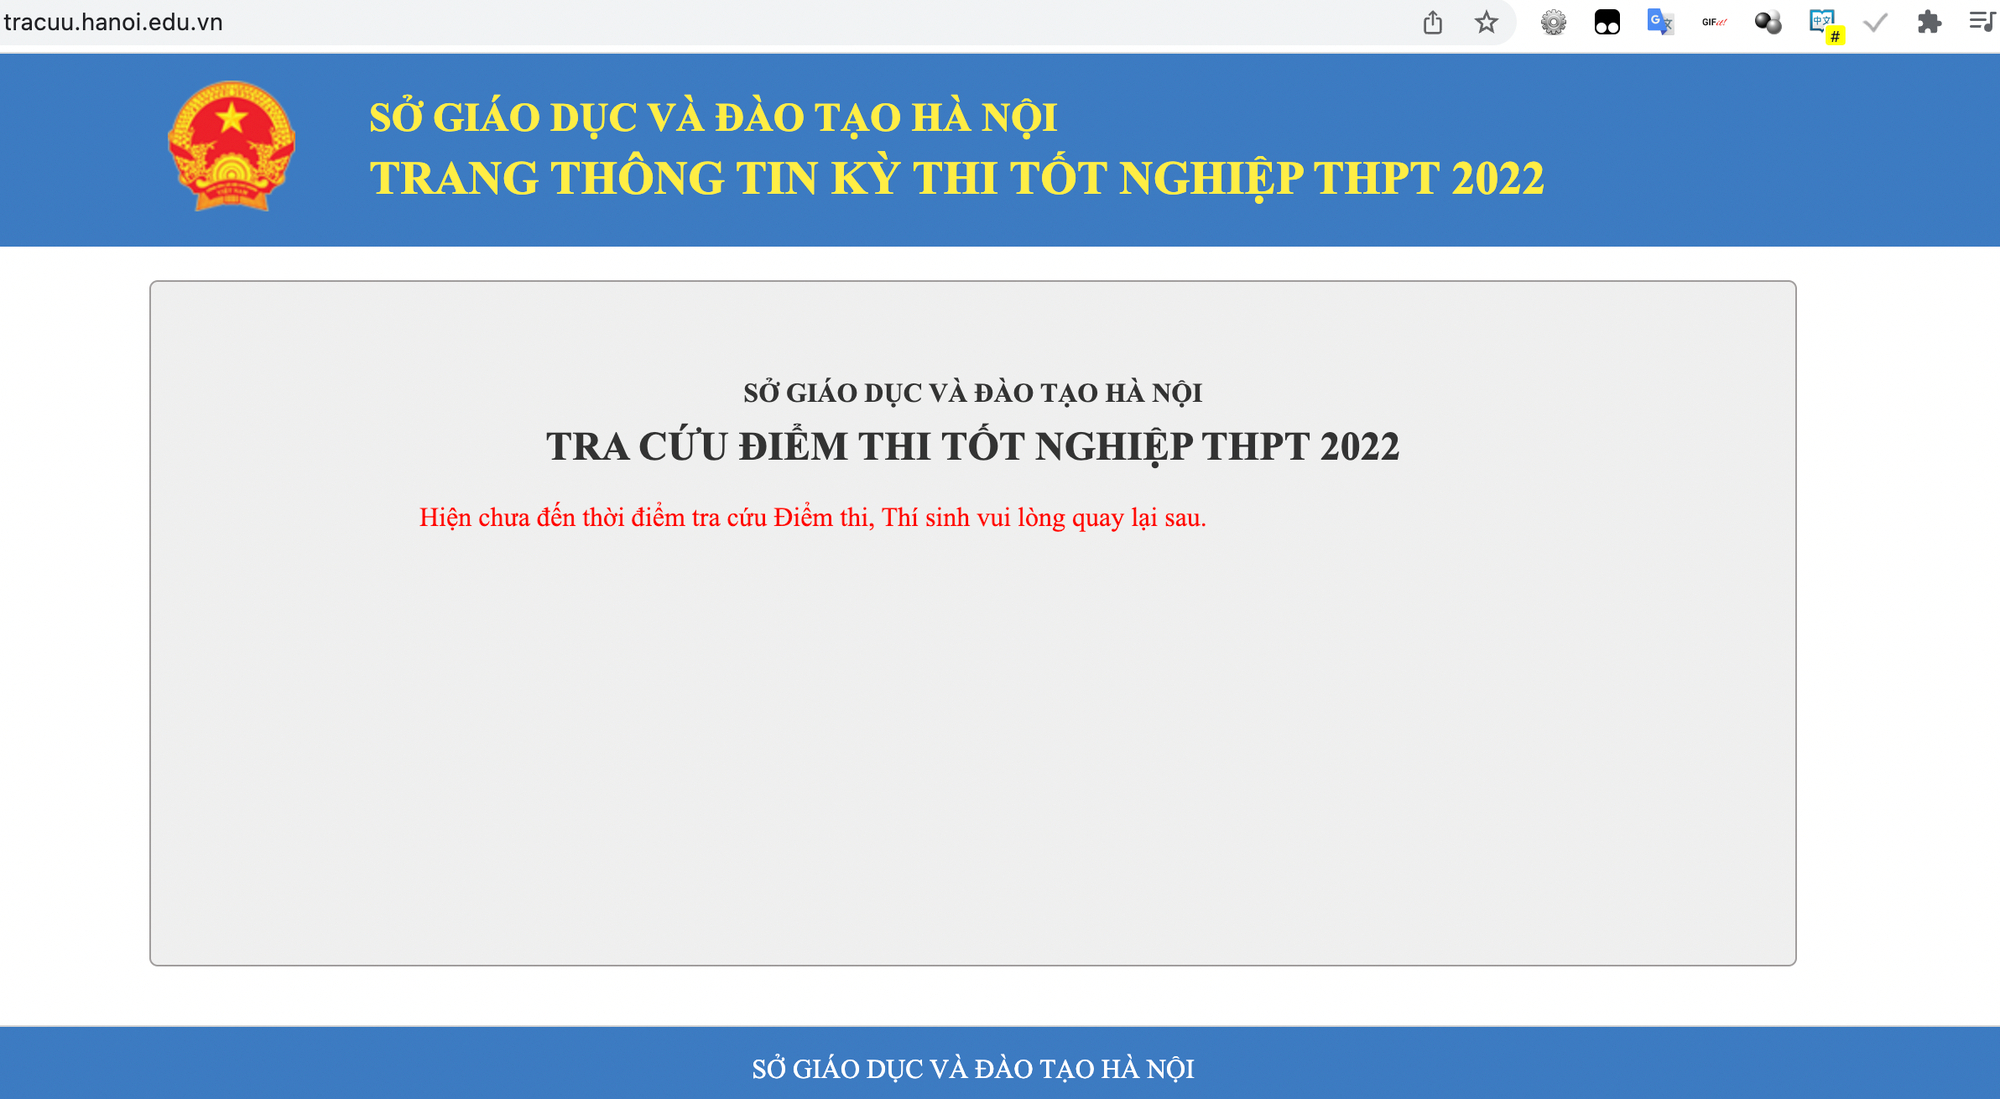 Tra cứu điểm thi tốt nghiệp THPT năm 2022 ở Hà Nội bằng 4 cách nhanh nhất - Ảnh 1.